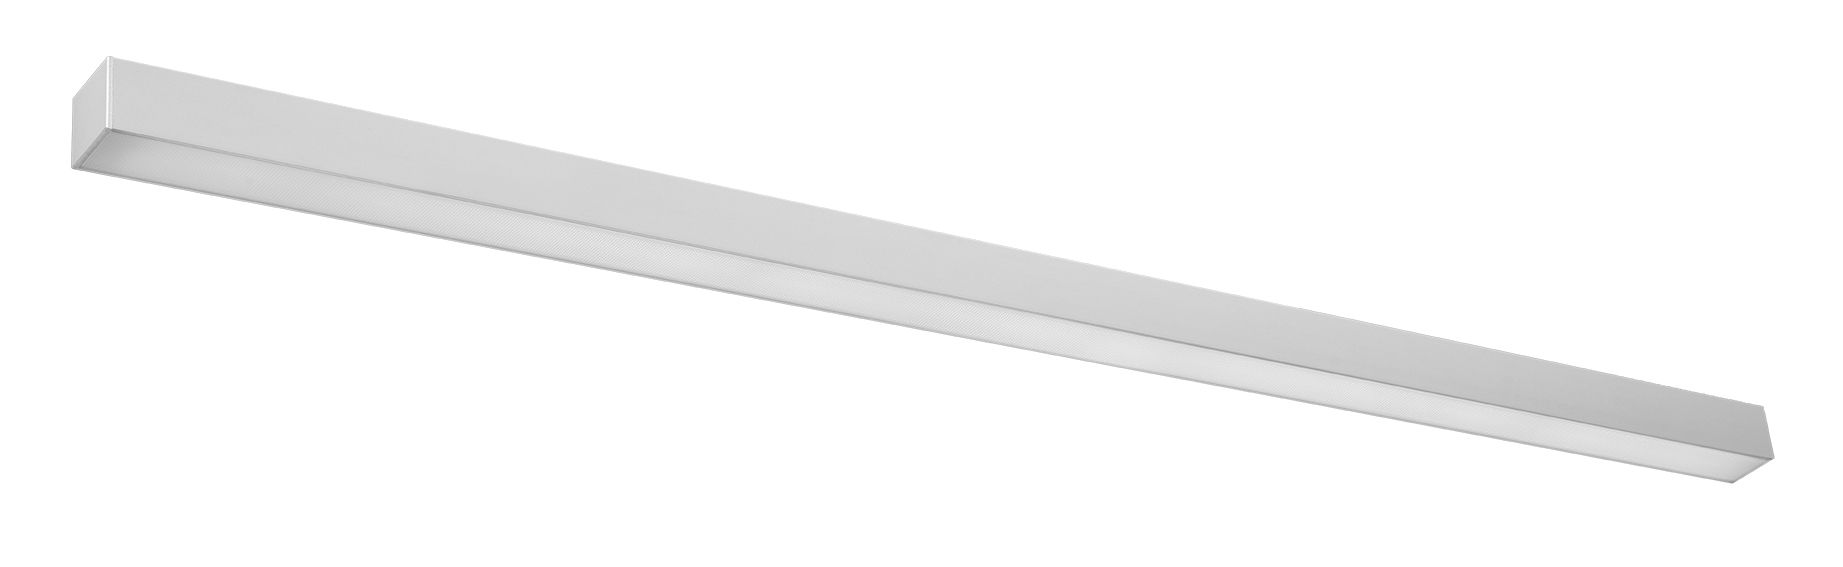 LED Wandleuchte Metall 150 cm lang flach Downlight